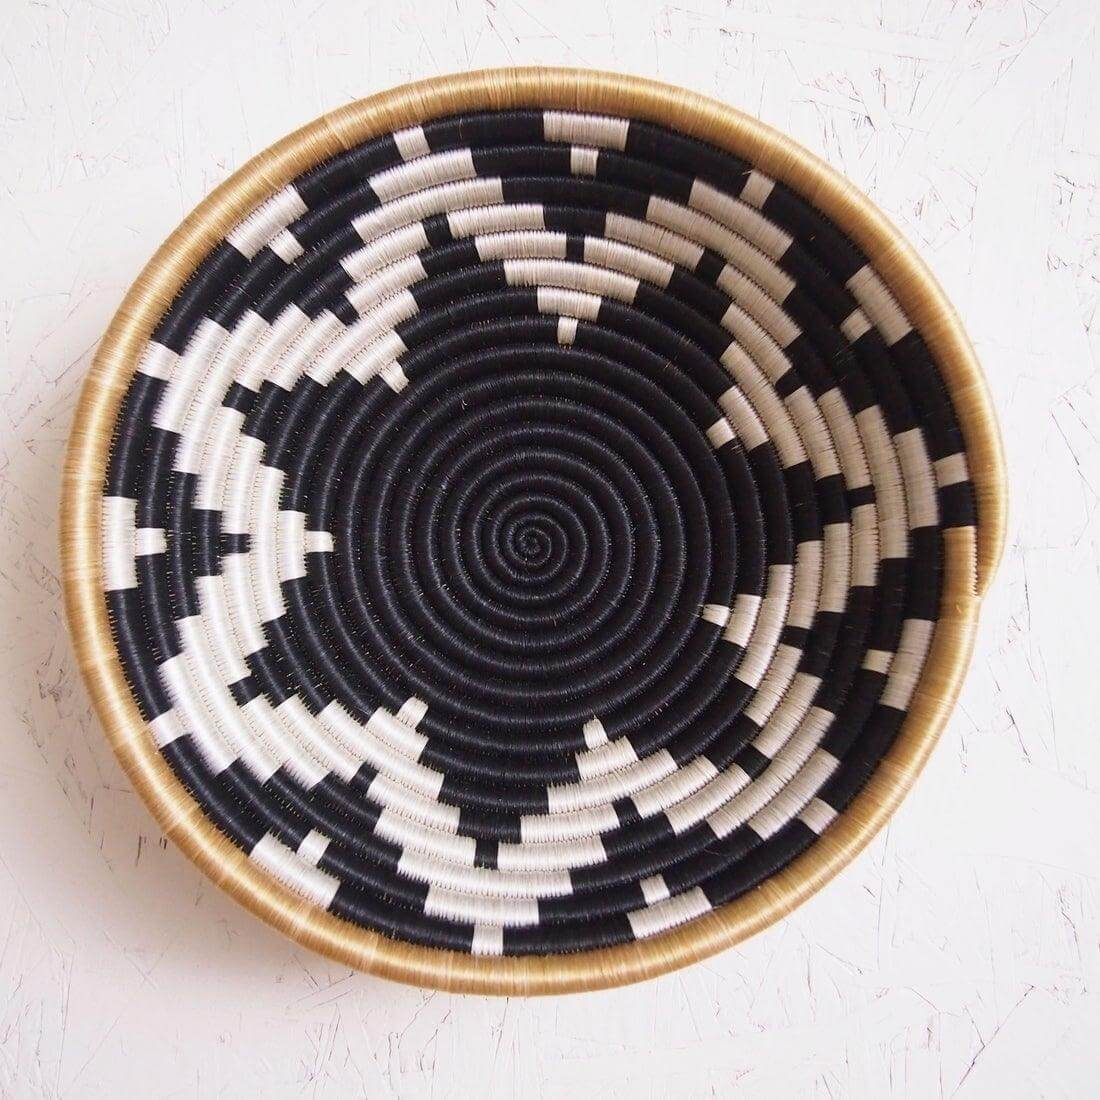 Rwandan seagrass black and white woven basket bowl